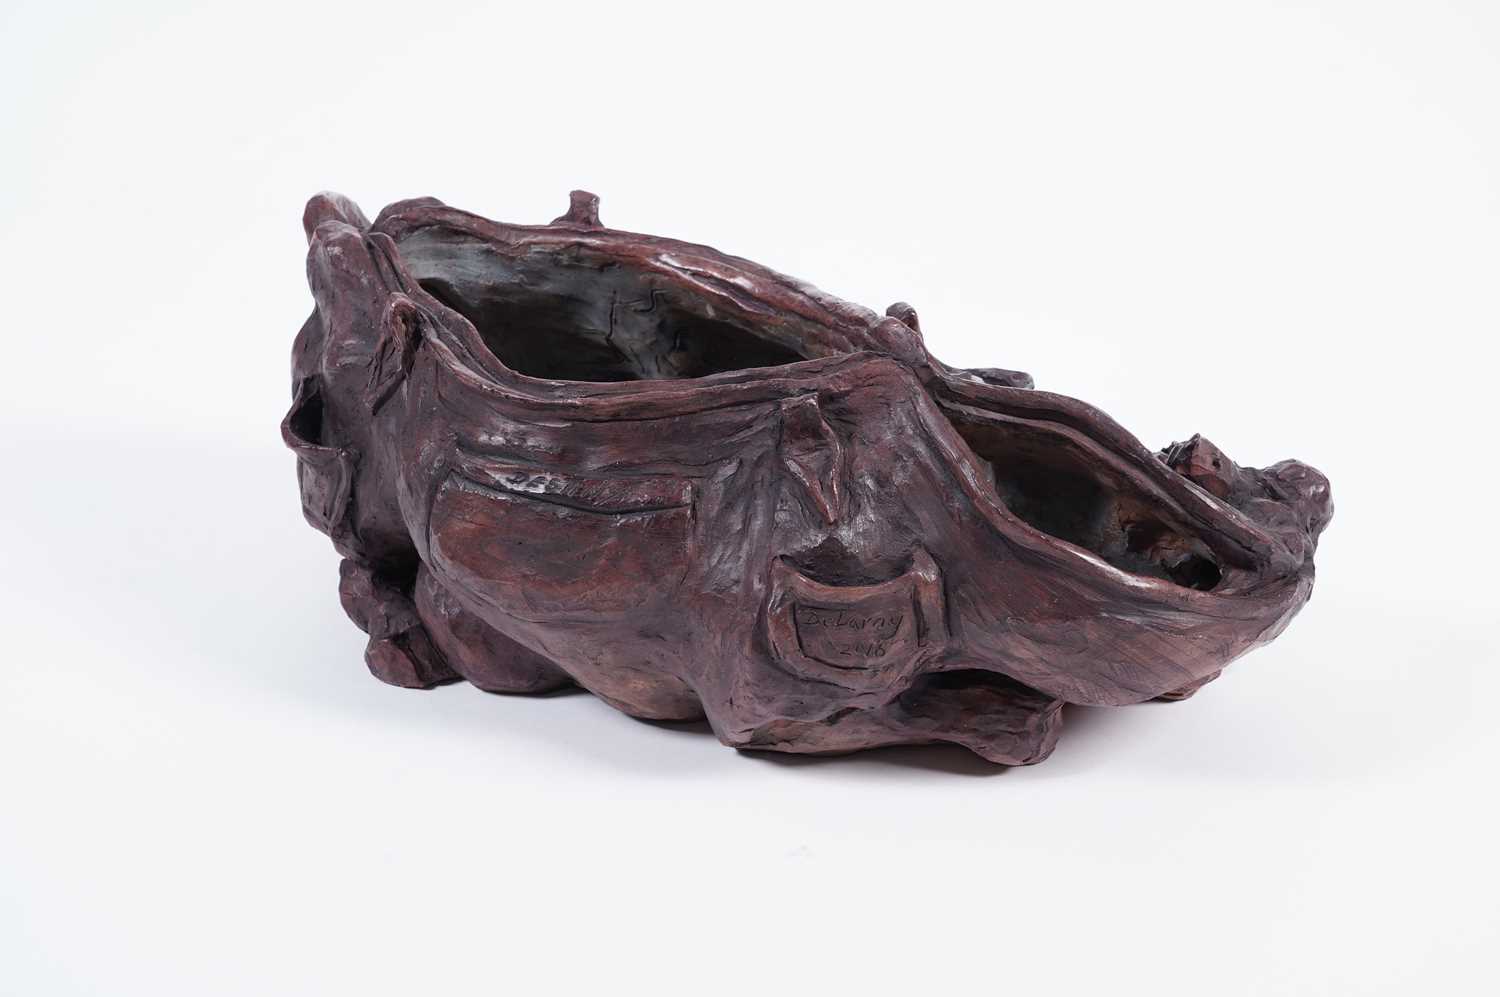 Lisa Delarny - Cowskin Handbag | clay sculpture - Image 3 of 8